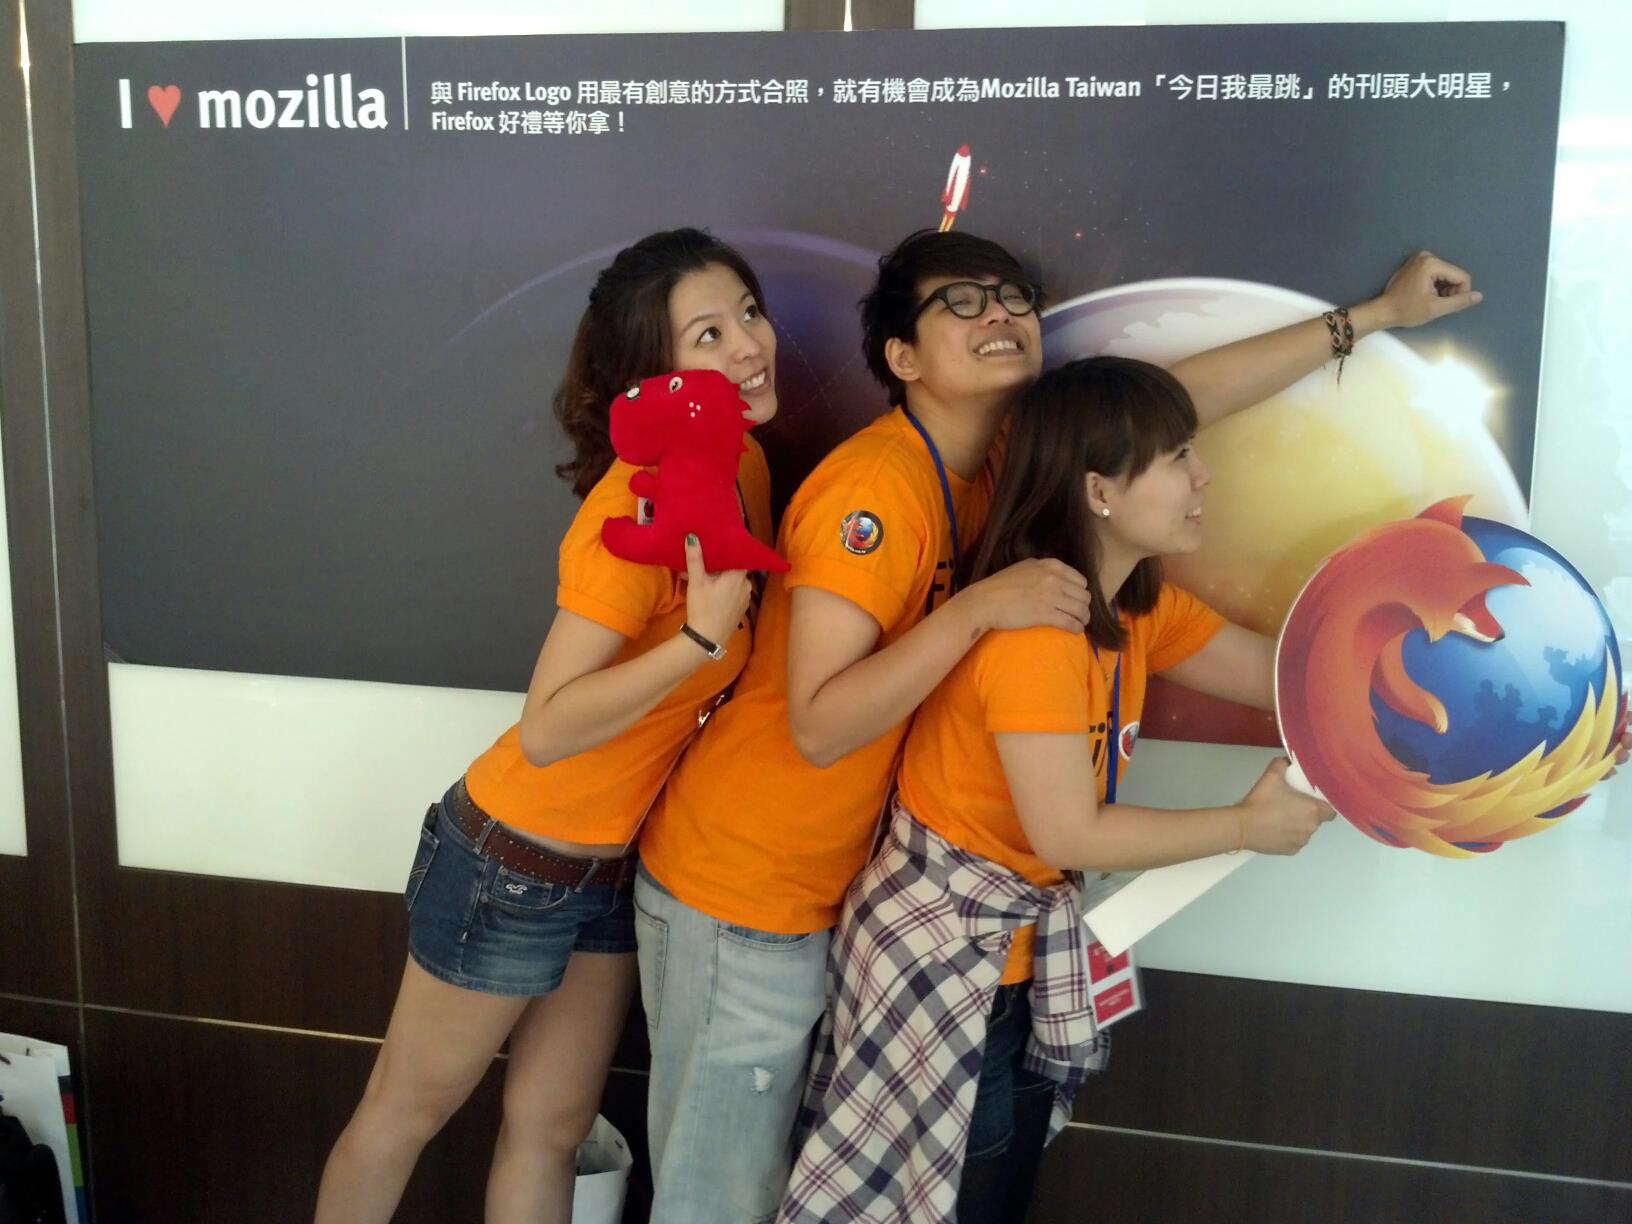 Mozilla Taiwan